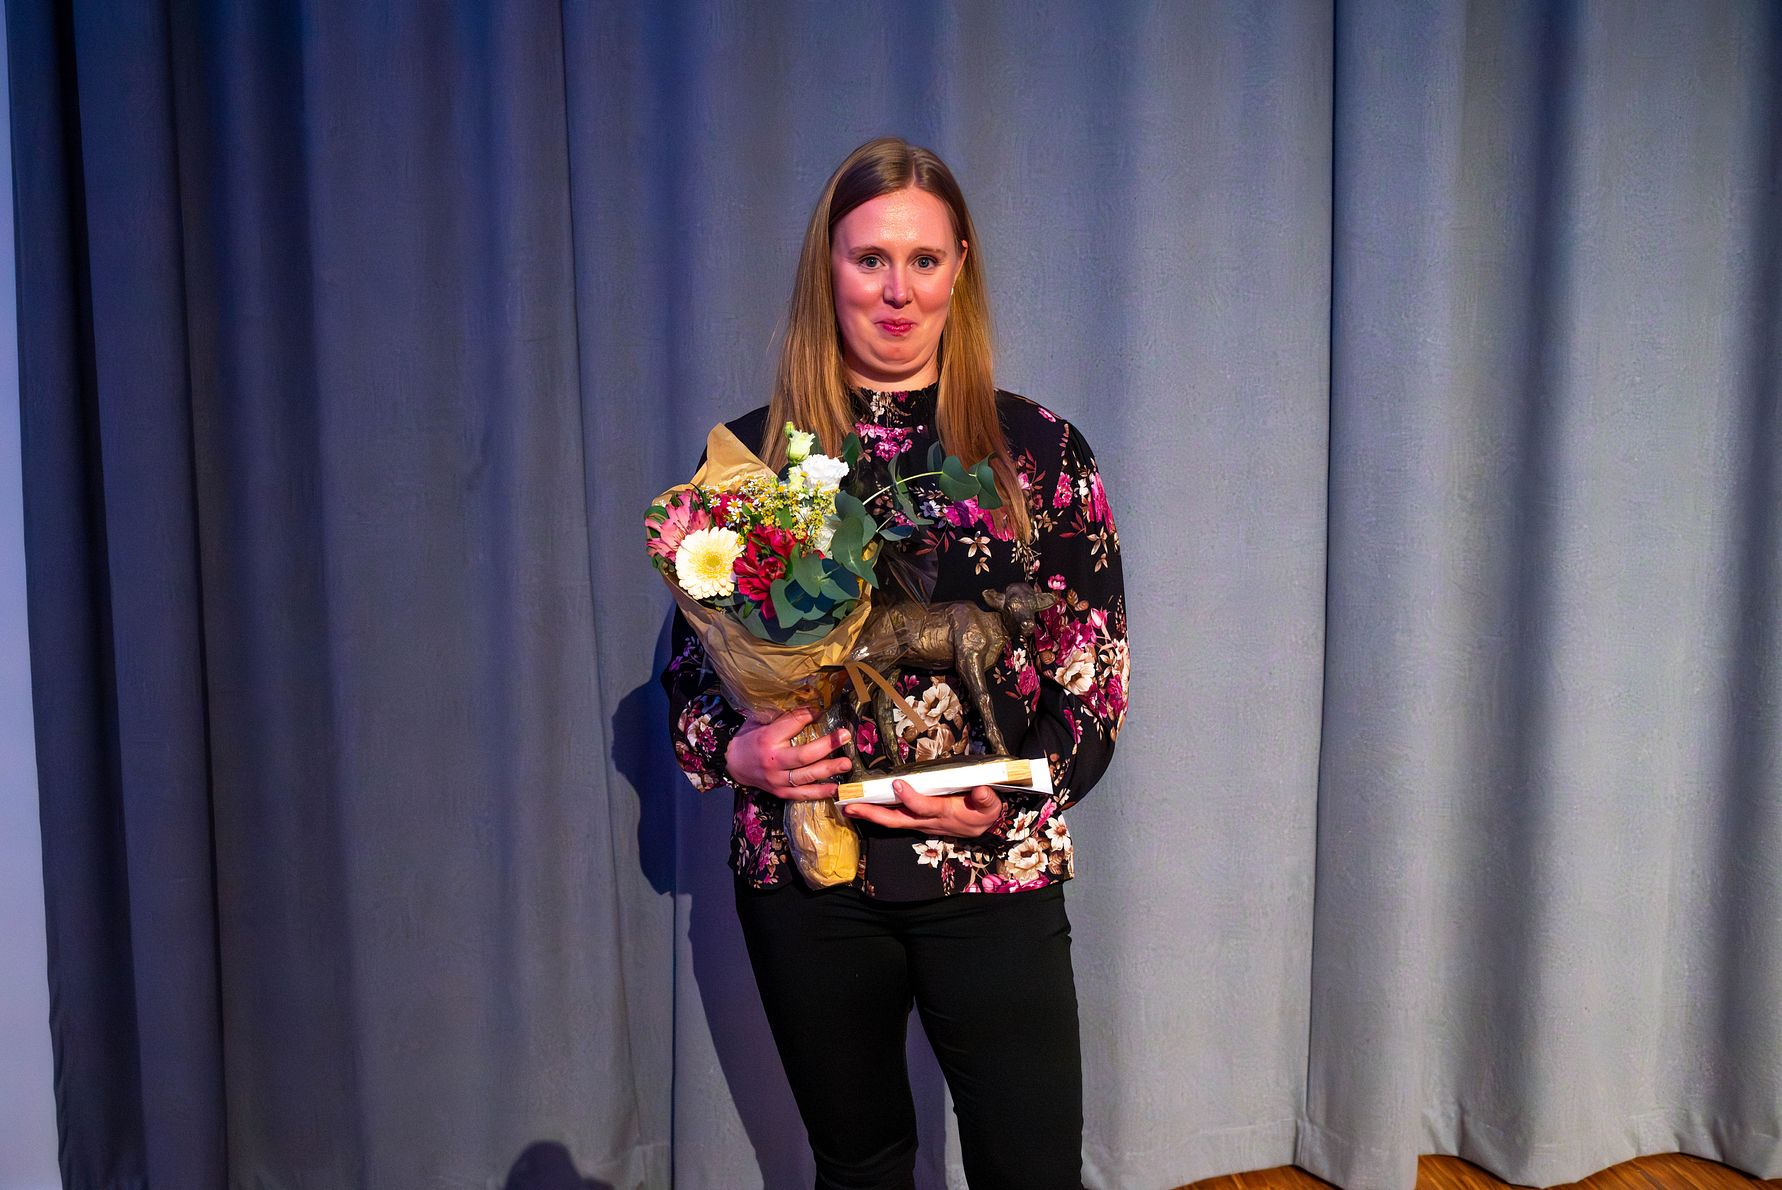 Årets avlstatuett ble gitt til Bente og John Oskar Muri for NR Muri-P. Datter Ingrid Muri var tilstede for å motta prisen